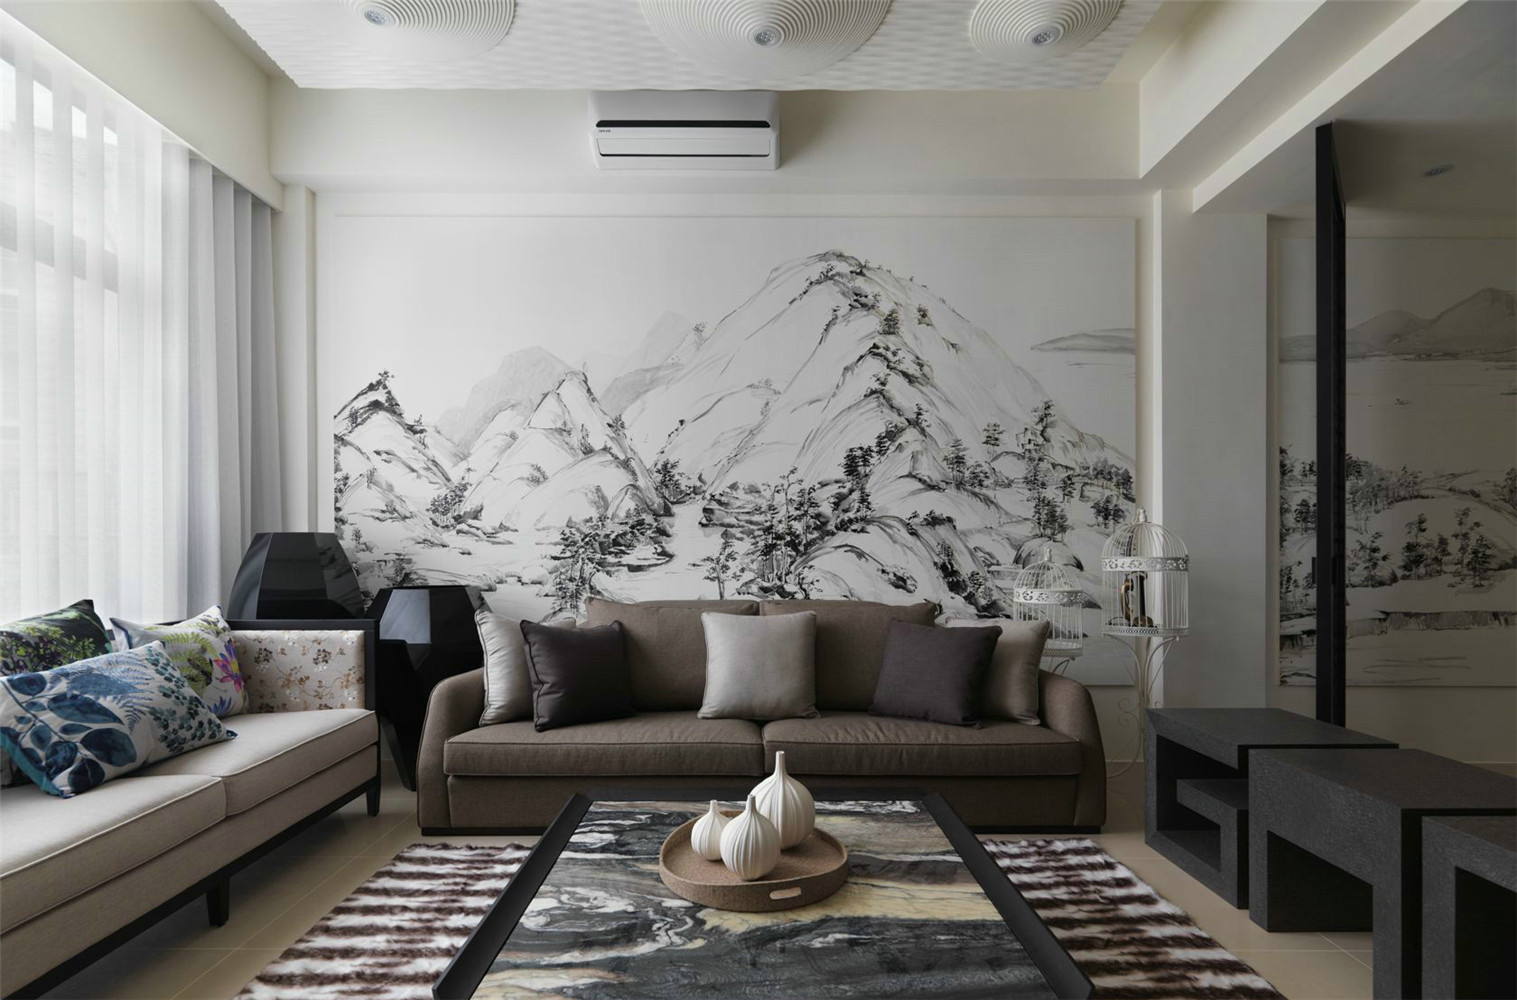 简约 中式 收纳 别墅 客厅图片来自张勇高级室内设计师在中式案例效果解析的分享